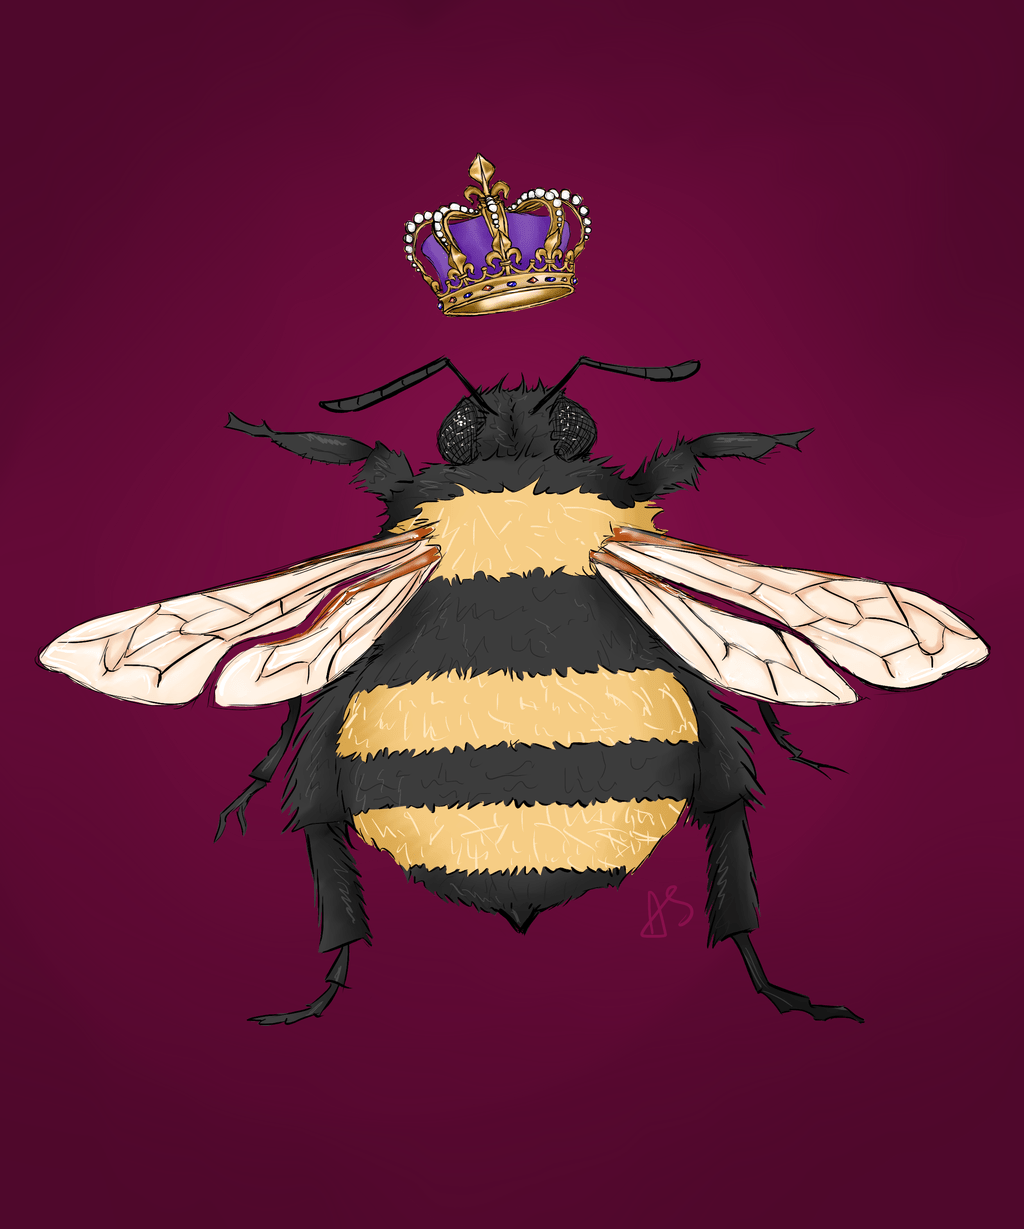 Queen Bee Wallpapers - Top Free Queen